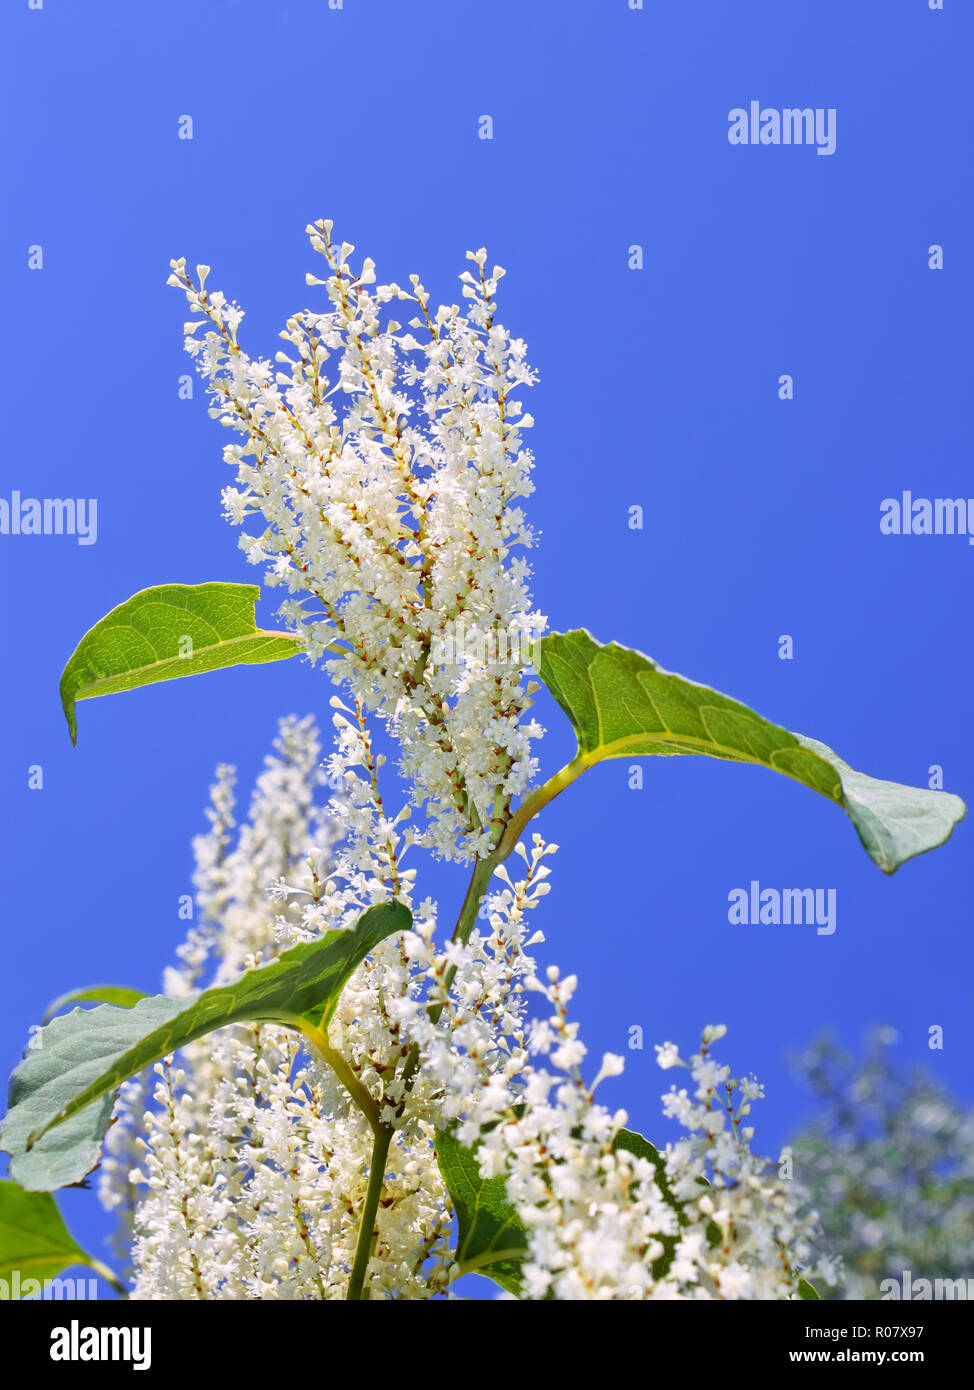 Blütenstände der japanische Knöterich (Fallopia japonica) mit kleinen weißen Blüten im Herbst Stockfoto